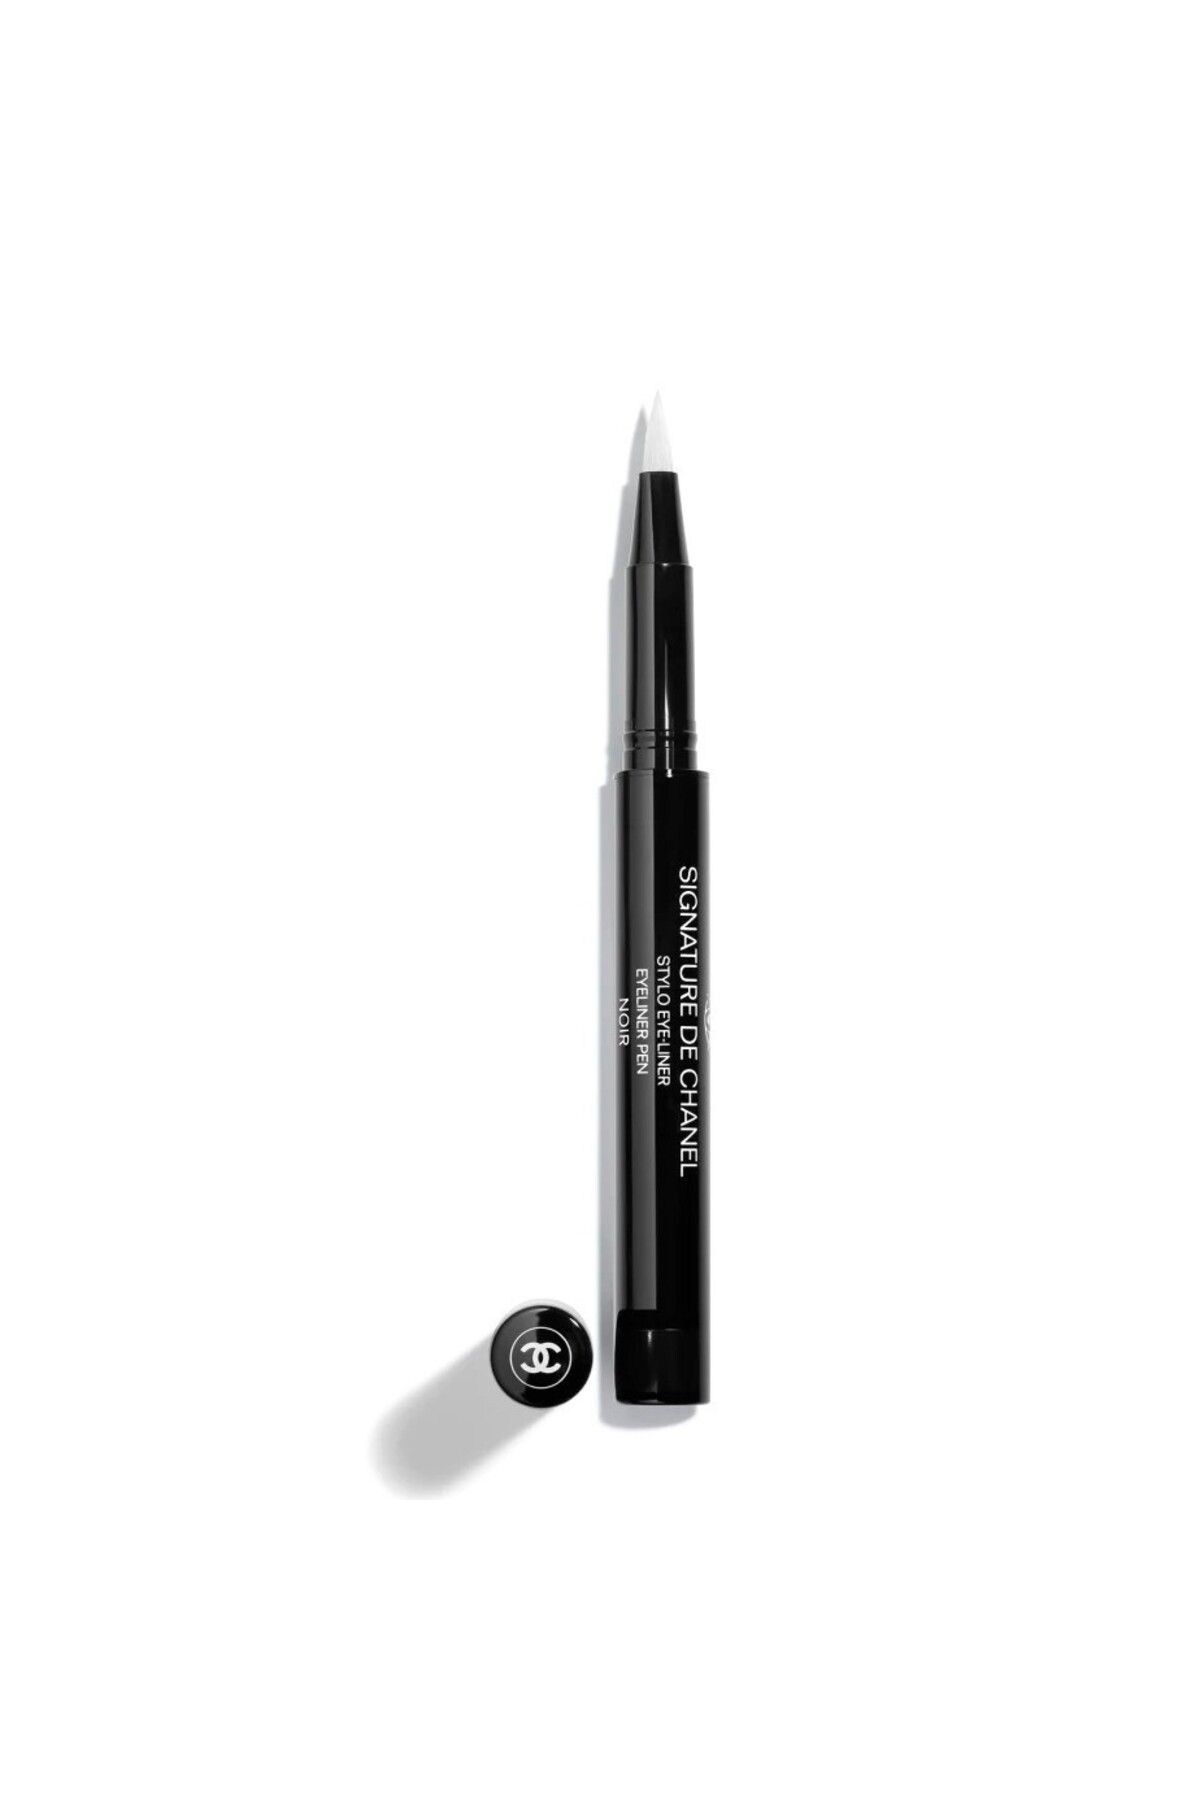 Chanel SIGNATURE DE CHANEL - Belirgin, Yoğun Ve Suya Dayanıklı Uzun Ömürlü Eyeliner 0.5 ml ( 10-Noir )